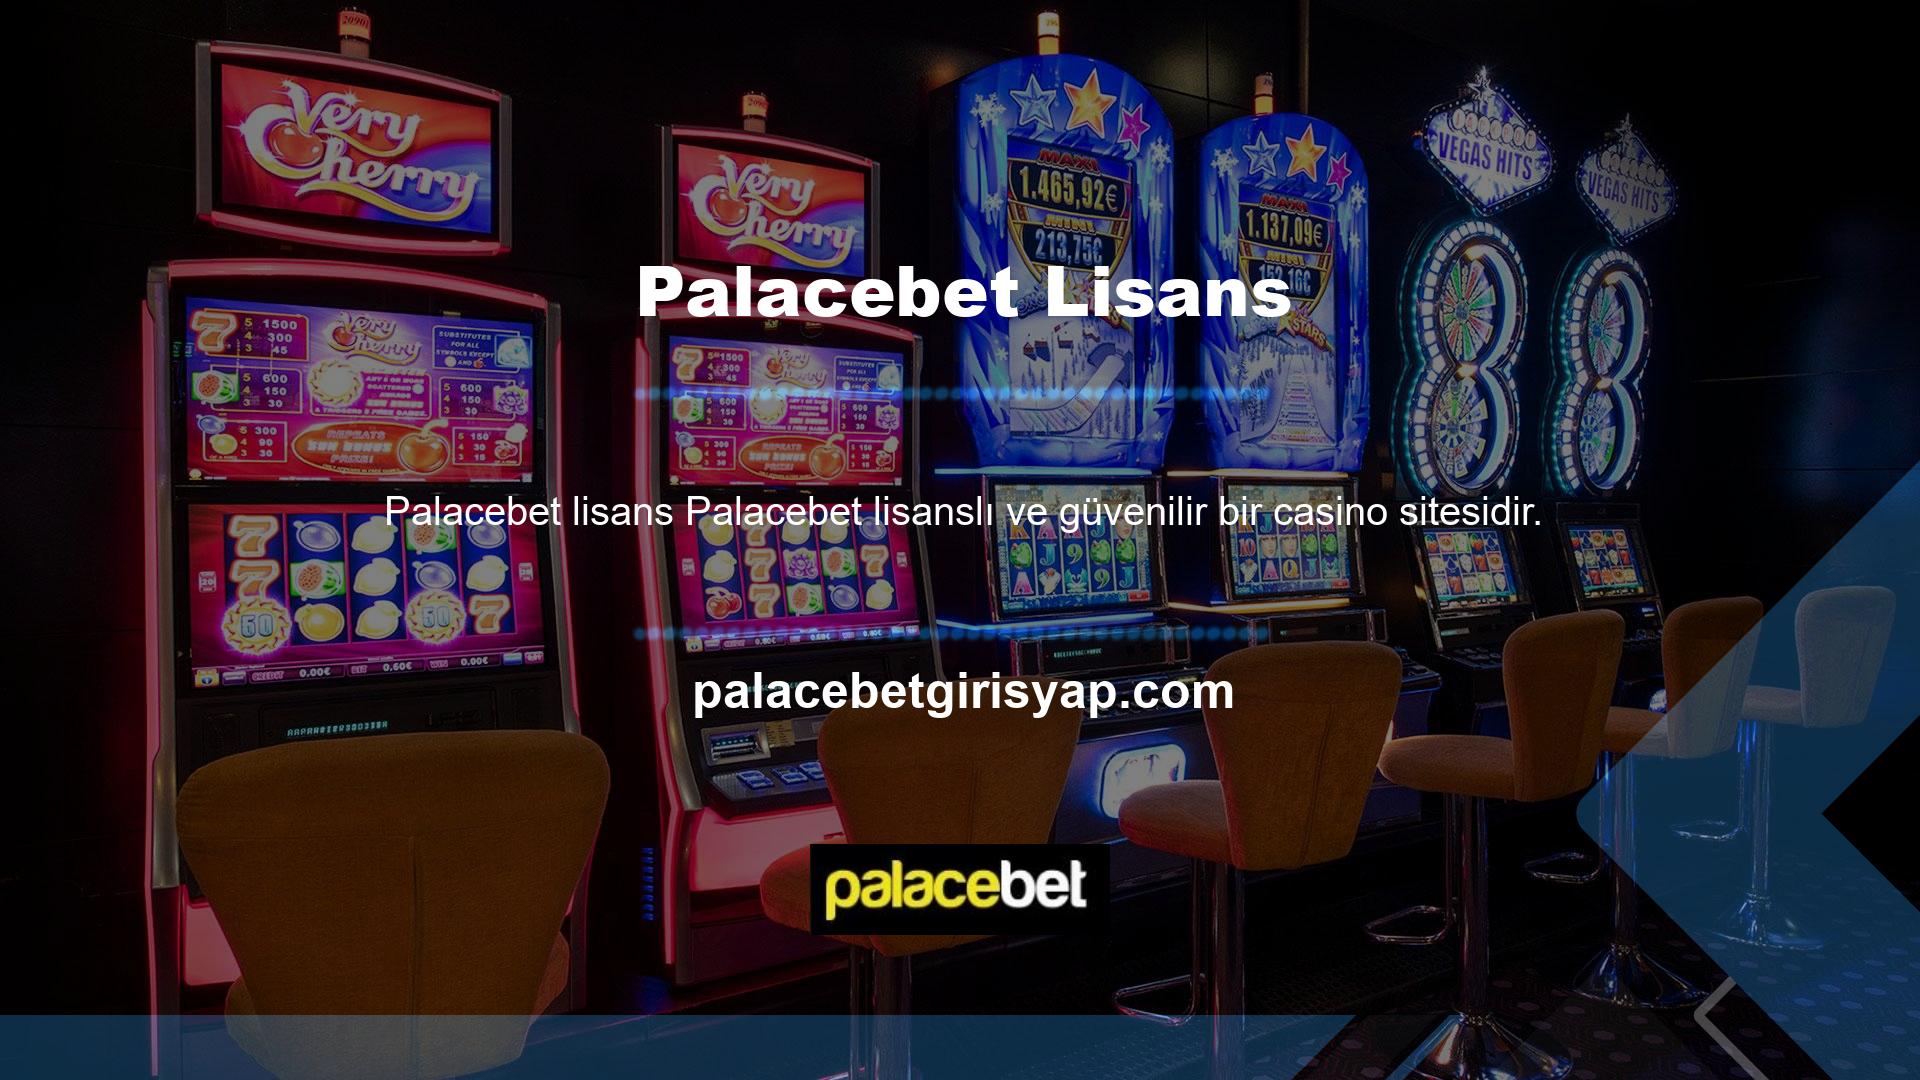 Palacebet casino siteleri uzun yıllardır bölgede faaliyet gösteriyor ve oldukça insani bir dokunuş sunuyor